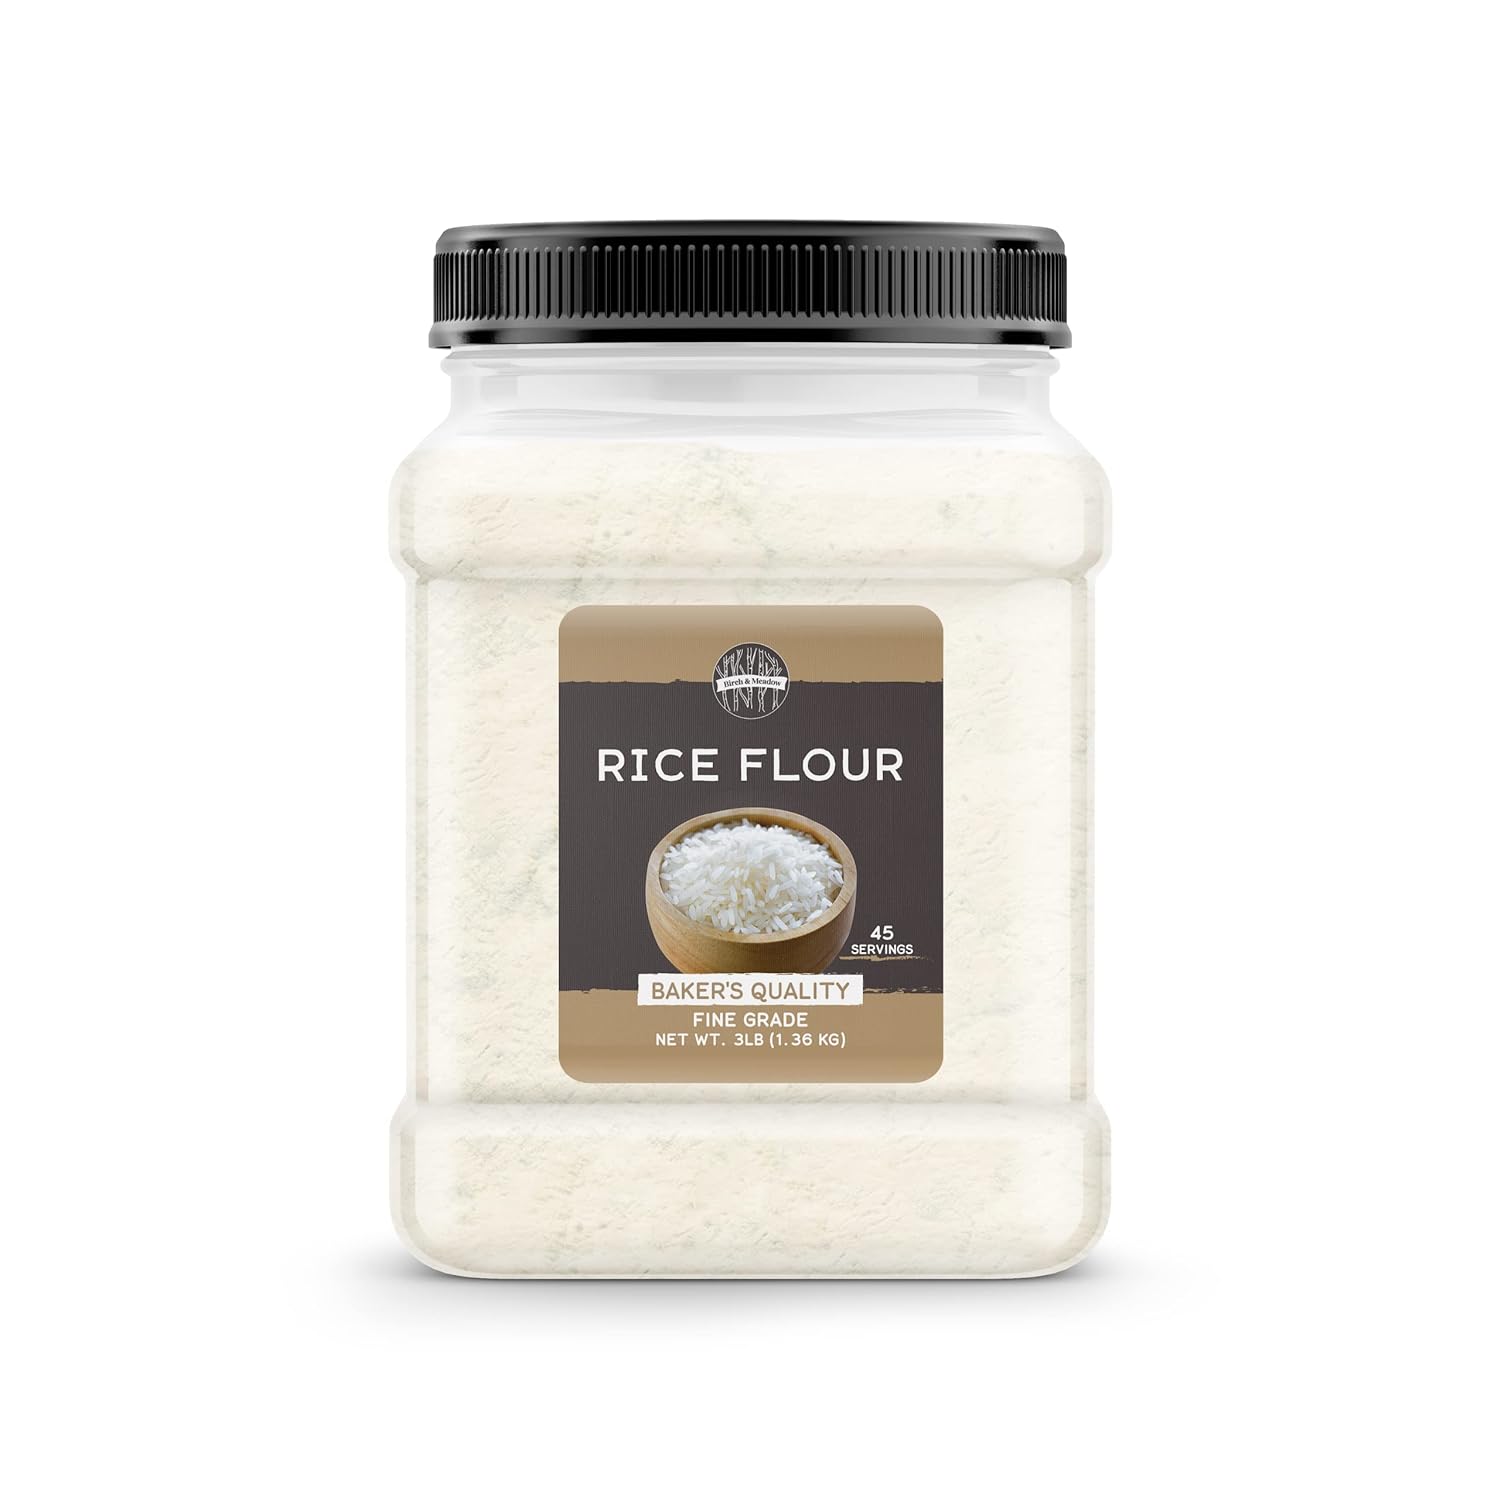 Birch & Meadow 3 lb of Rice Flour, Gluten Free, Non-GMO